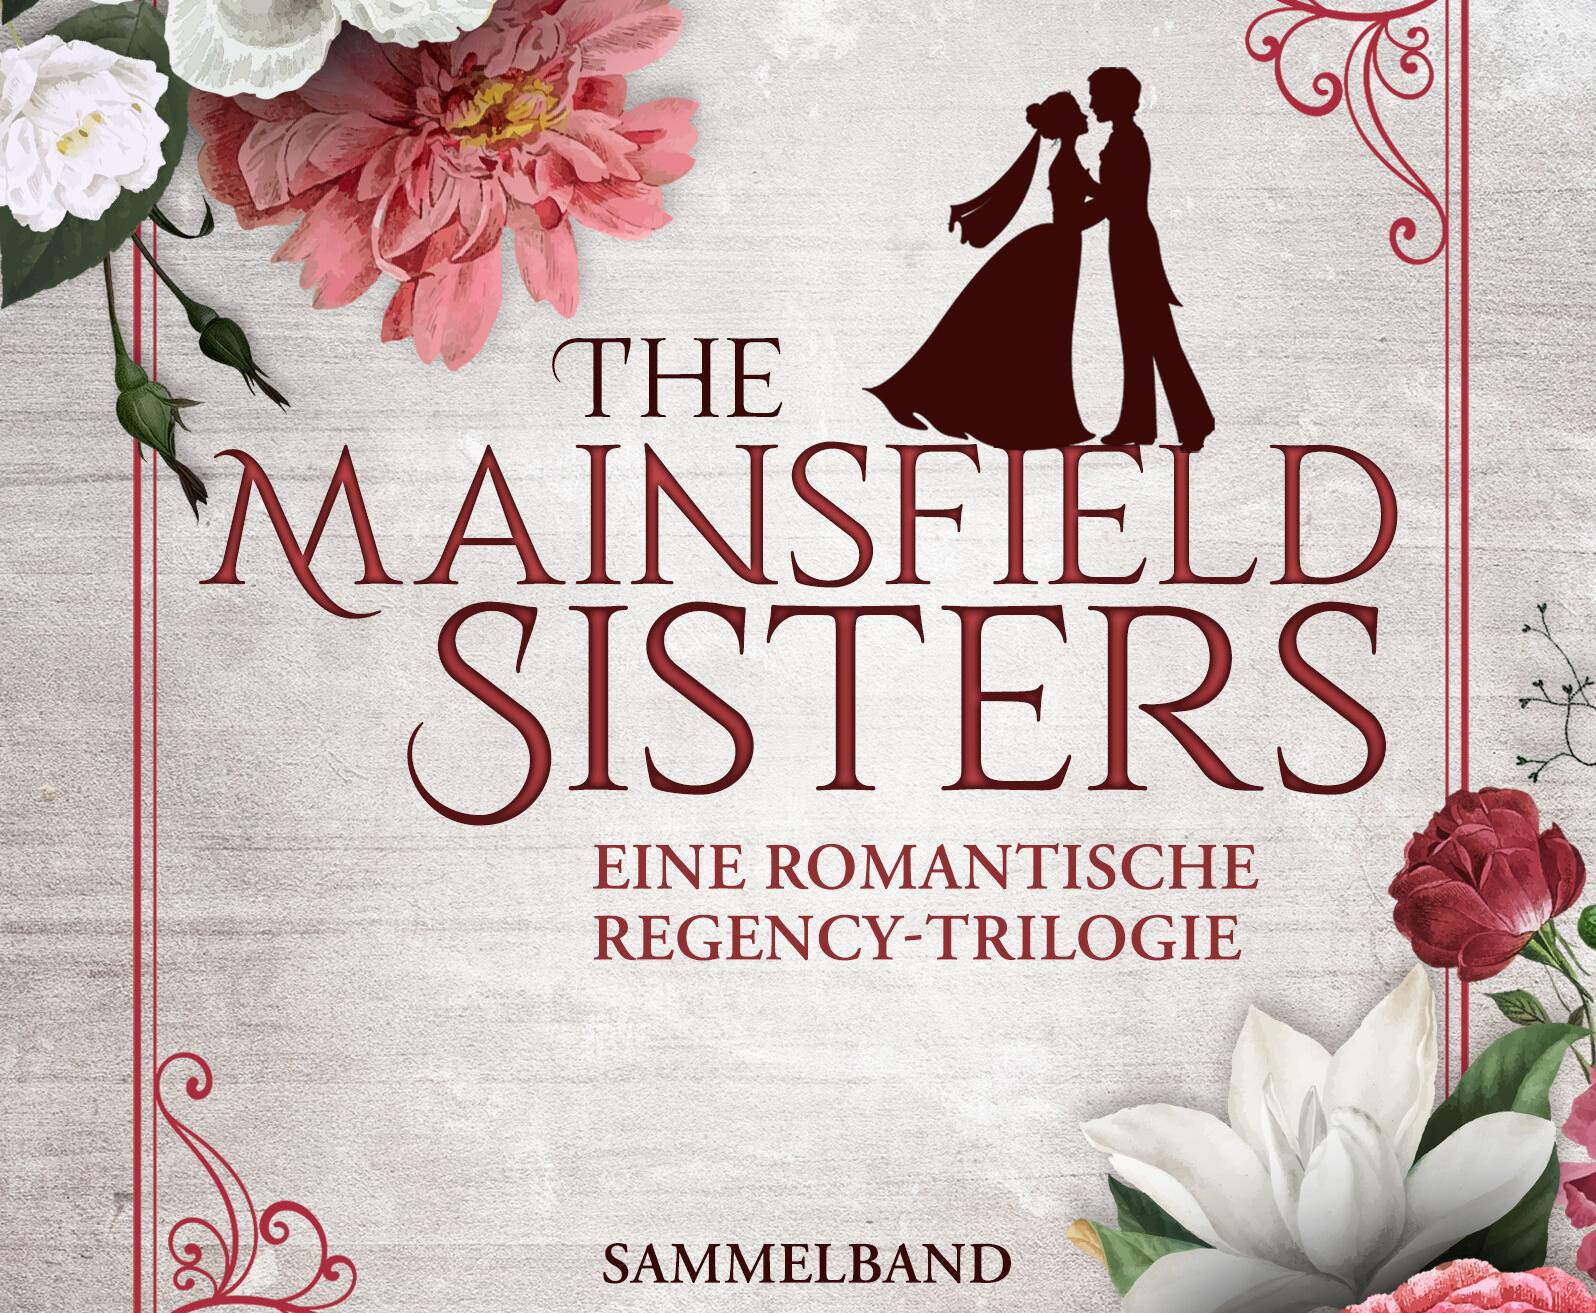  Der Sammelband der „The Mainsfield Sisters“-Reihe kann in jeder Buchhandlung bestellt werden. ISBN: 978-3-7568-1930-0.  